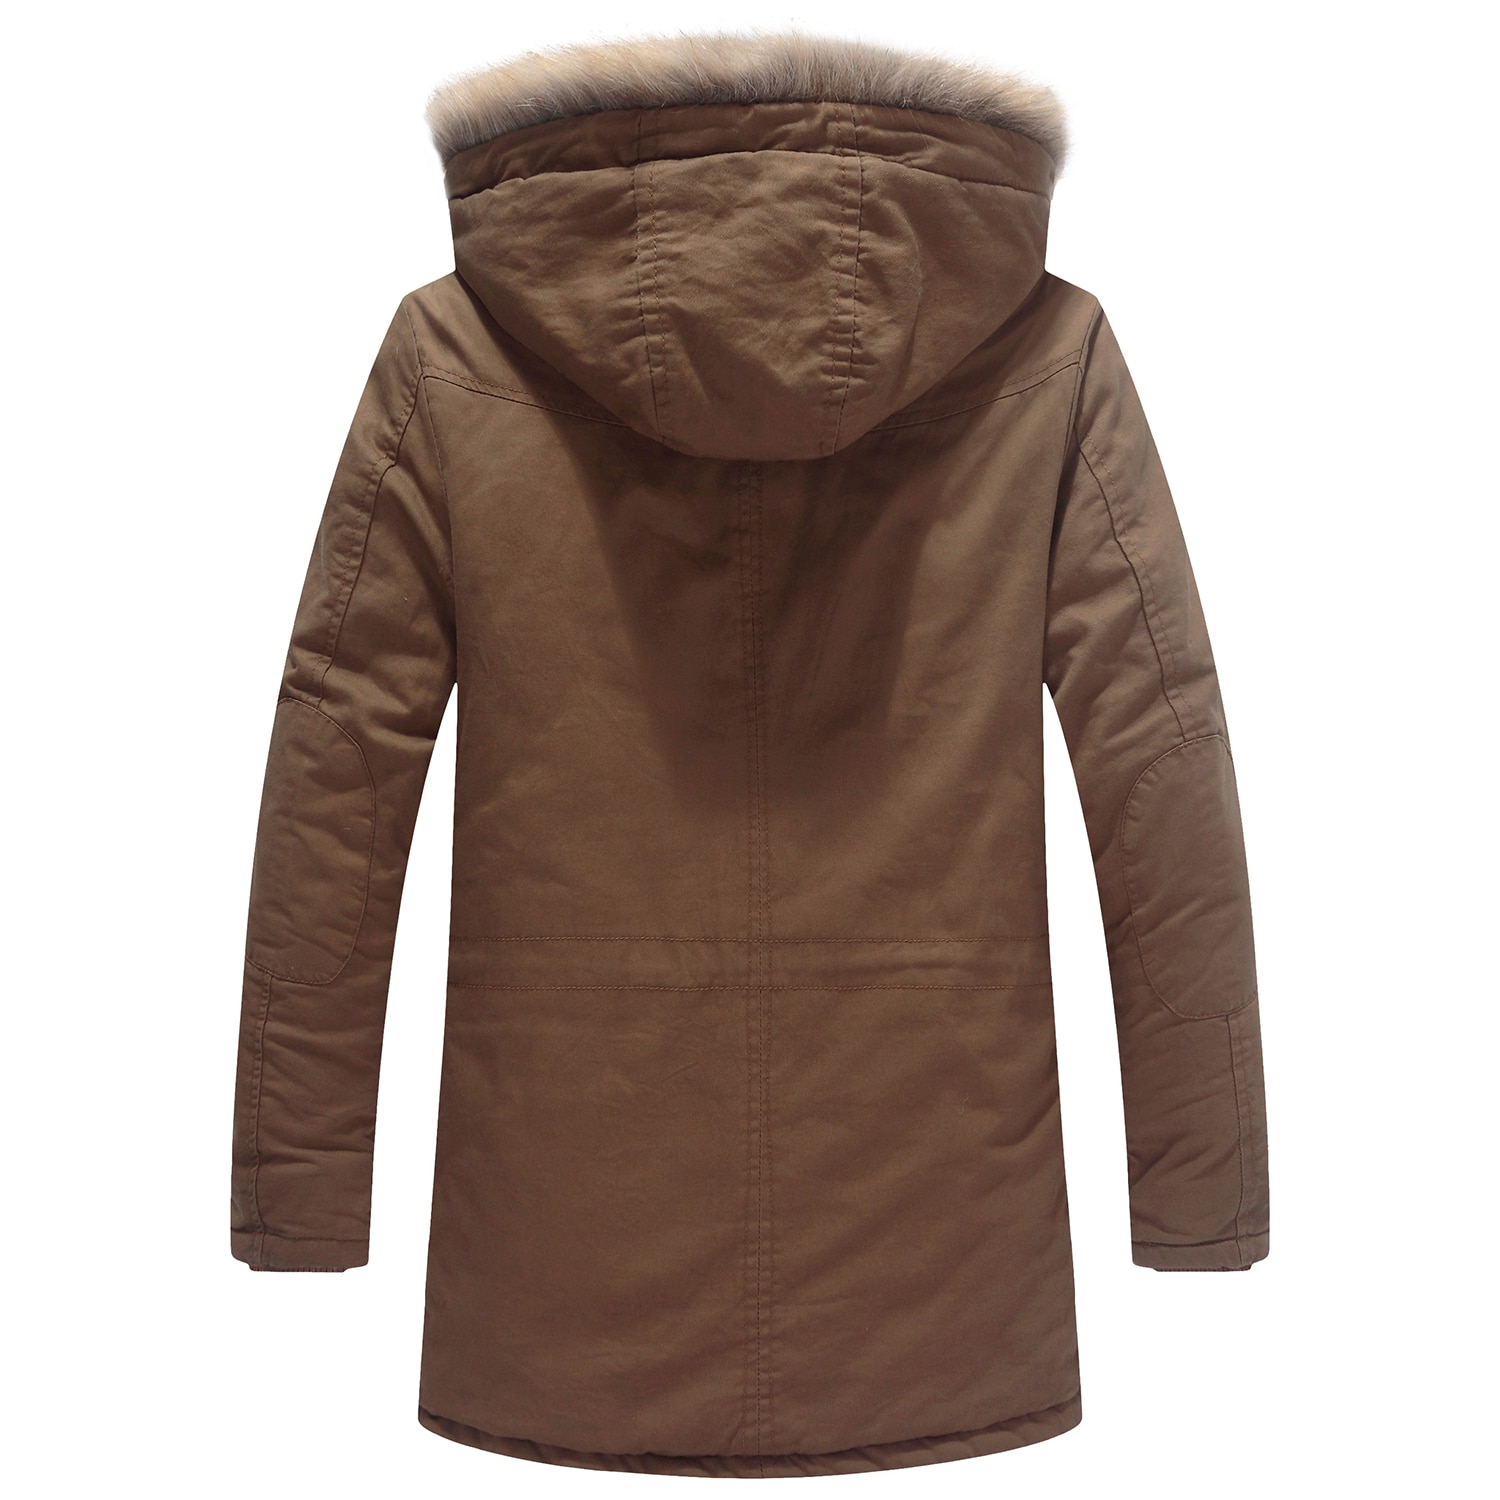 Men's Winter Jacket with Detachable Hood